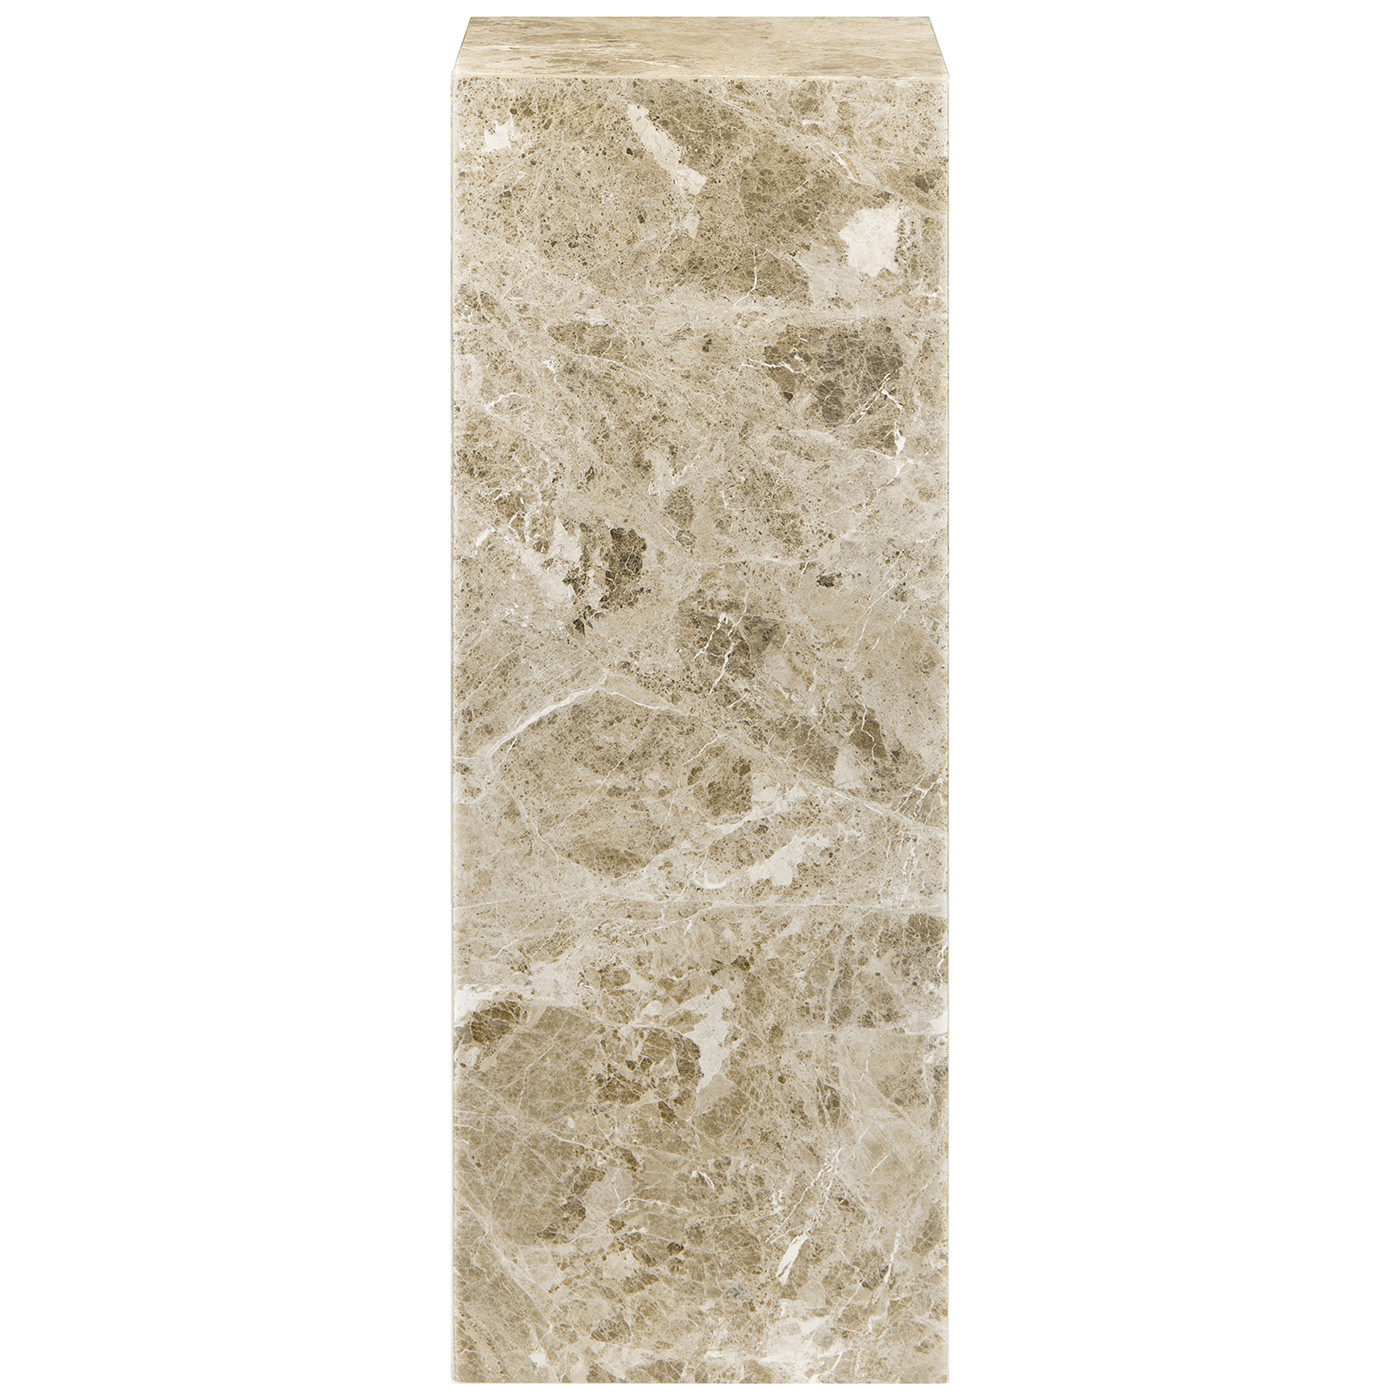 TI 1739 405 12 – Cubic Pedestal Marble Brown Latte 25x25x70cm (1)